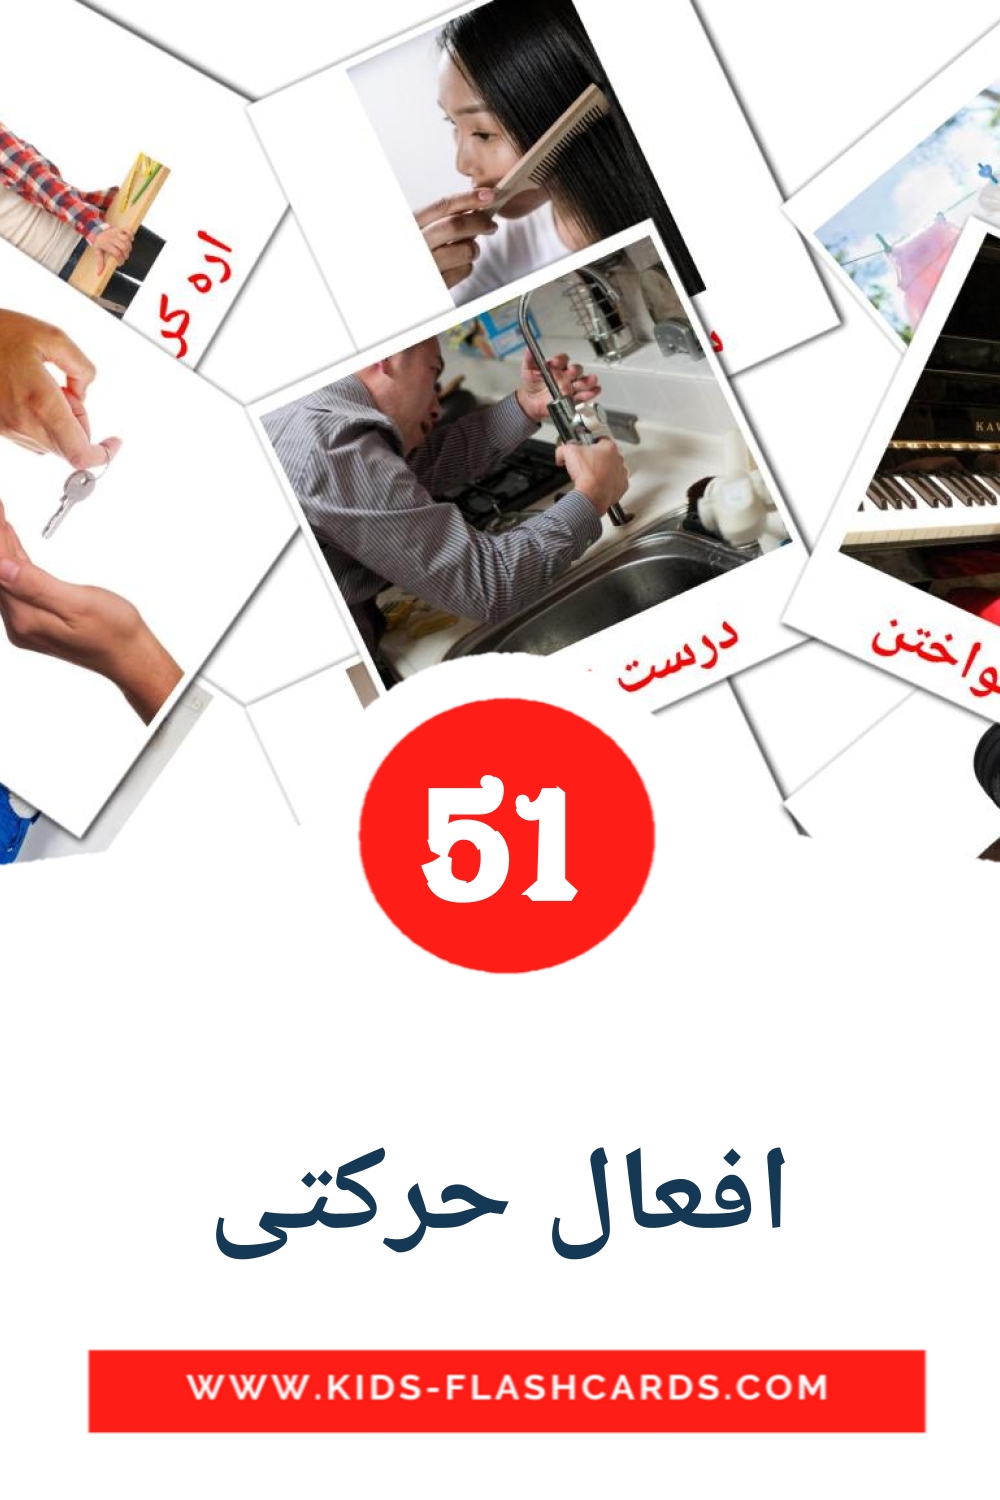 51 tarjetas didacticas de افعال حرکتی para el jardín de infancia en persa